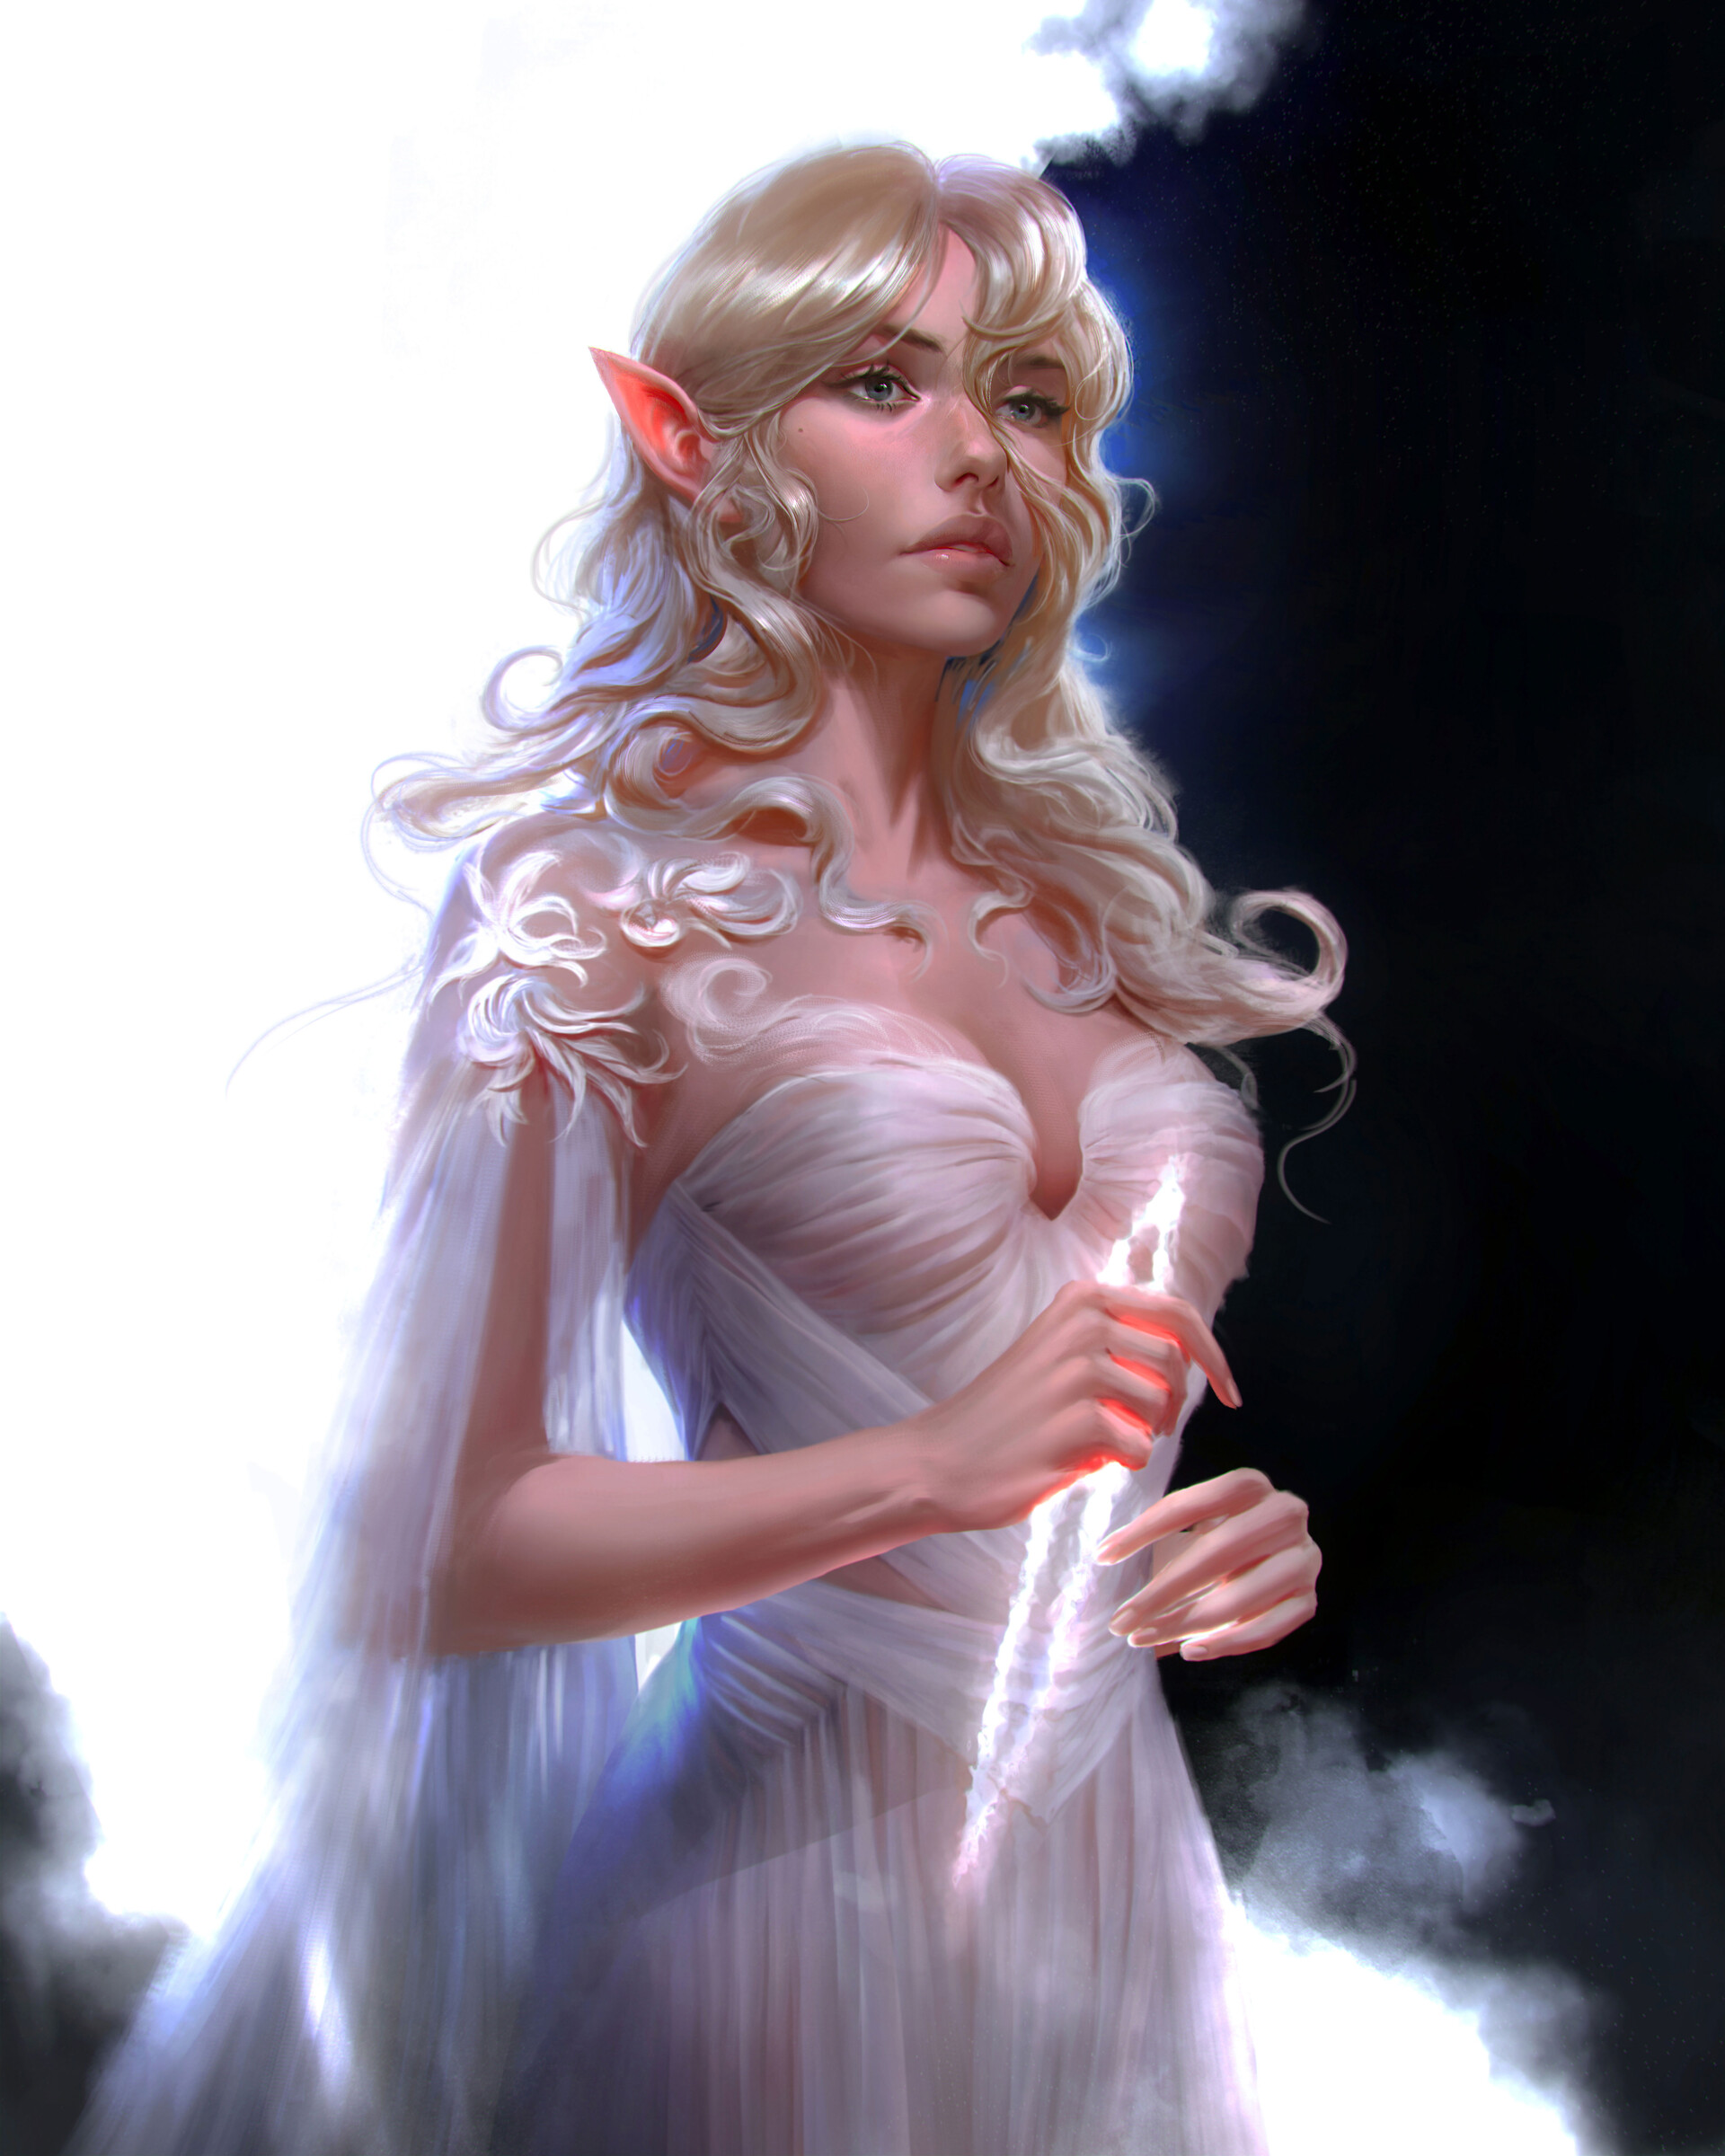 General 1920x2400 artwork fantasy art fantasy girl dress white dress pointy ears blonde long hair white clothing